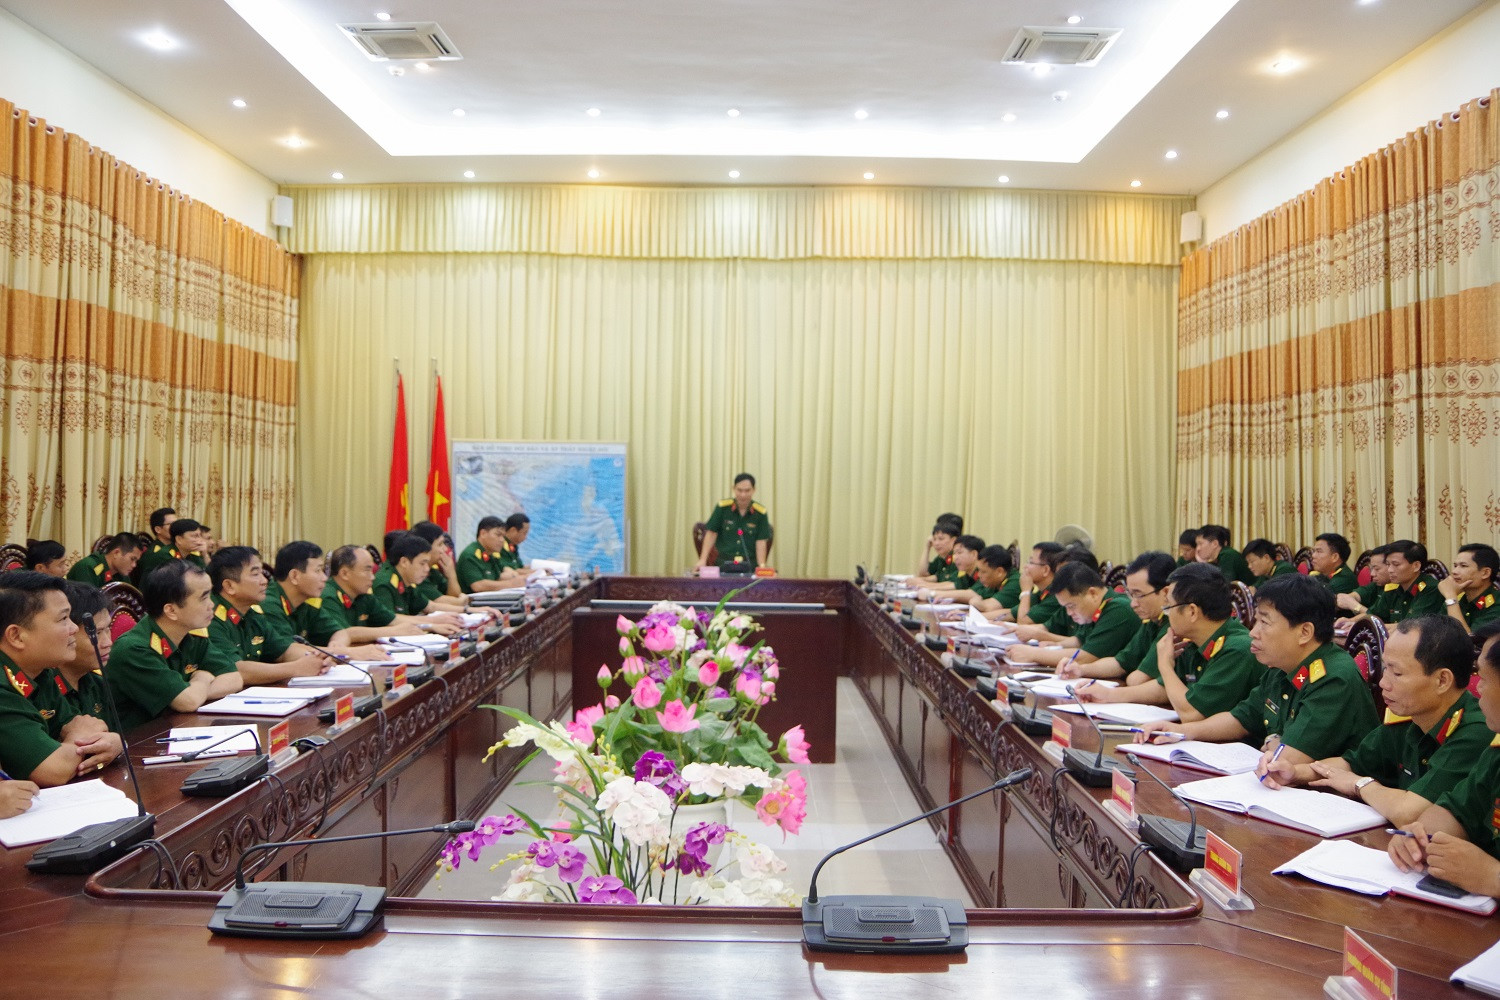 Đại tá Trần Văn Hùng, Ủy viên Ban thường vụ Tỉnh ủy, Chỉ huy trưởng Bộ CHQS tỉnh chủ trì hội nghị.